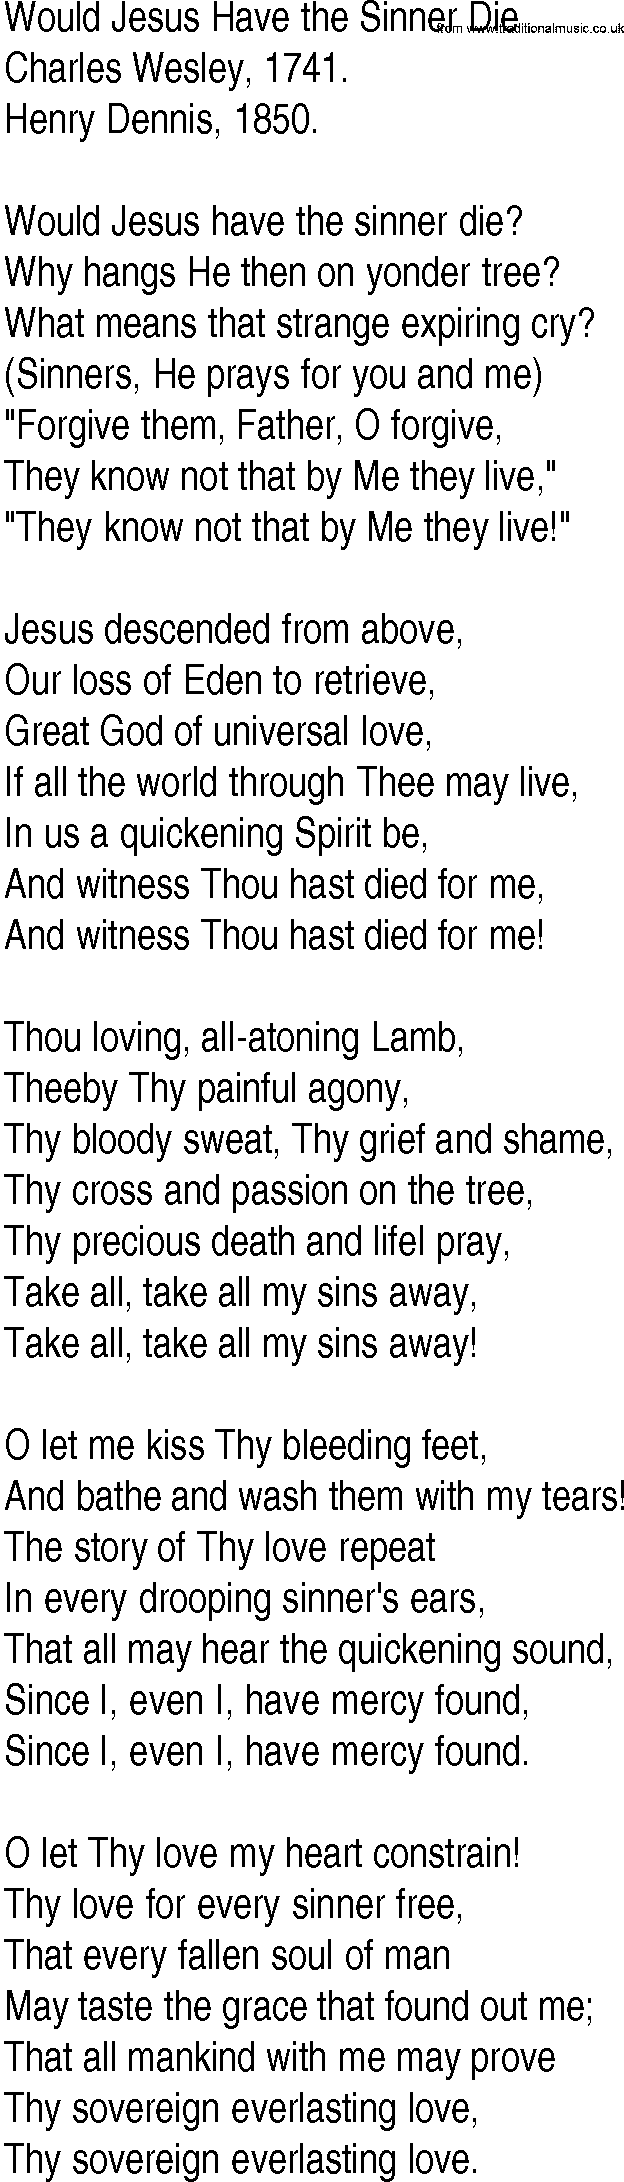 Hymn and Gospel Song: Would Jesus Have the Sinner Die by Charles Wesley lyrics